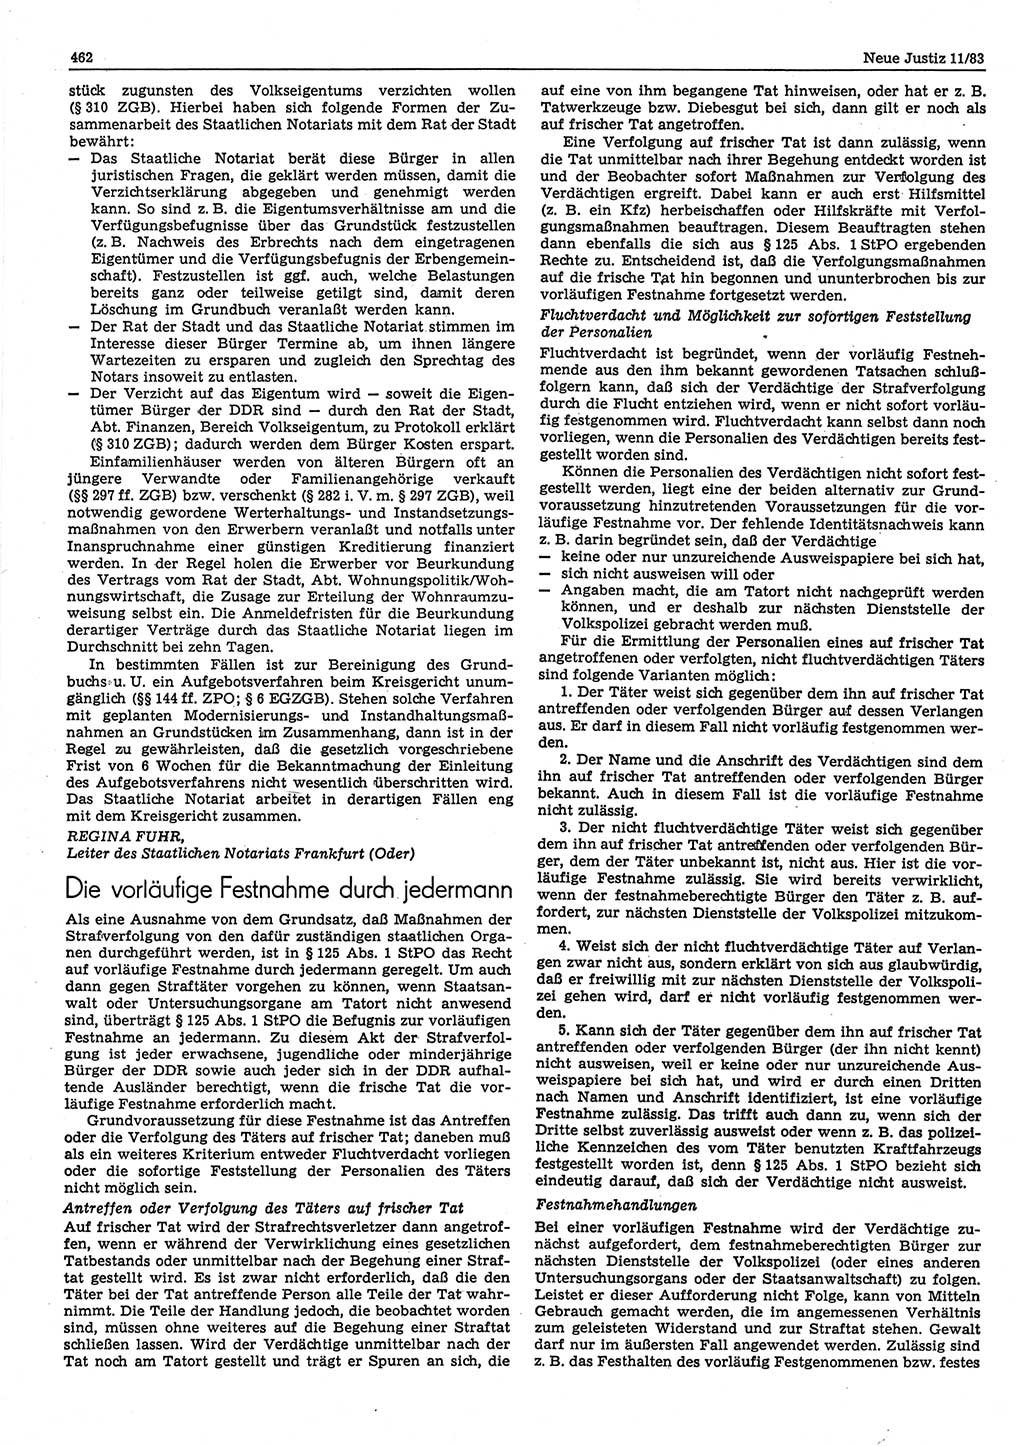 Neue Justiz (NJ), Zeitschrift für sozialistisches Recht und Gesetzlichkeit [Deutsche Demokratische Republik (DDR)], 37. Jahrgang 1983, Seite 462 (NJ DDR 1983, S. 462)